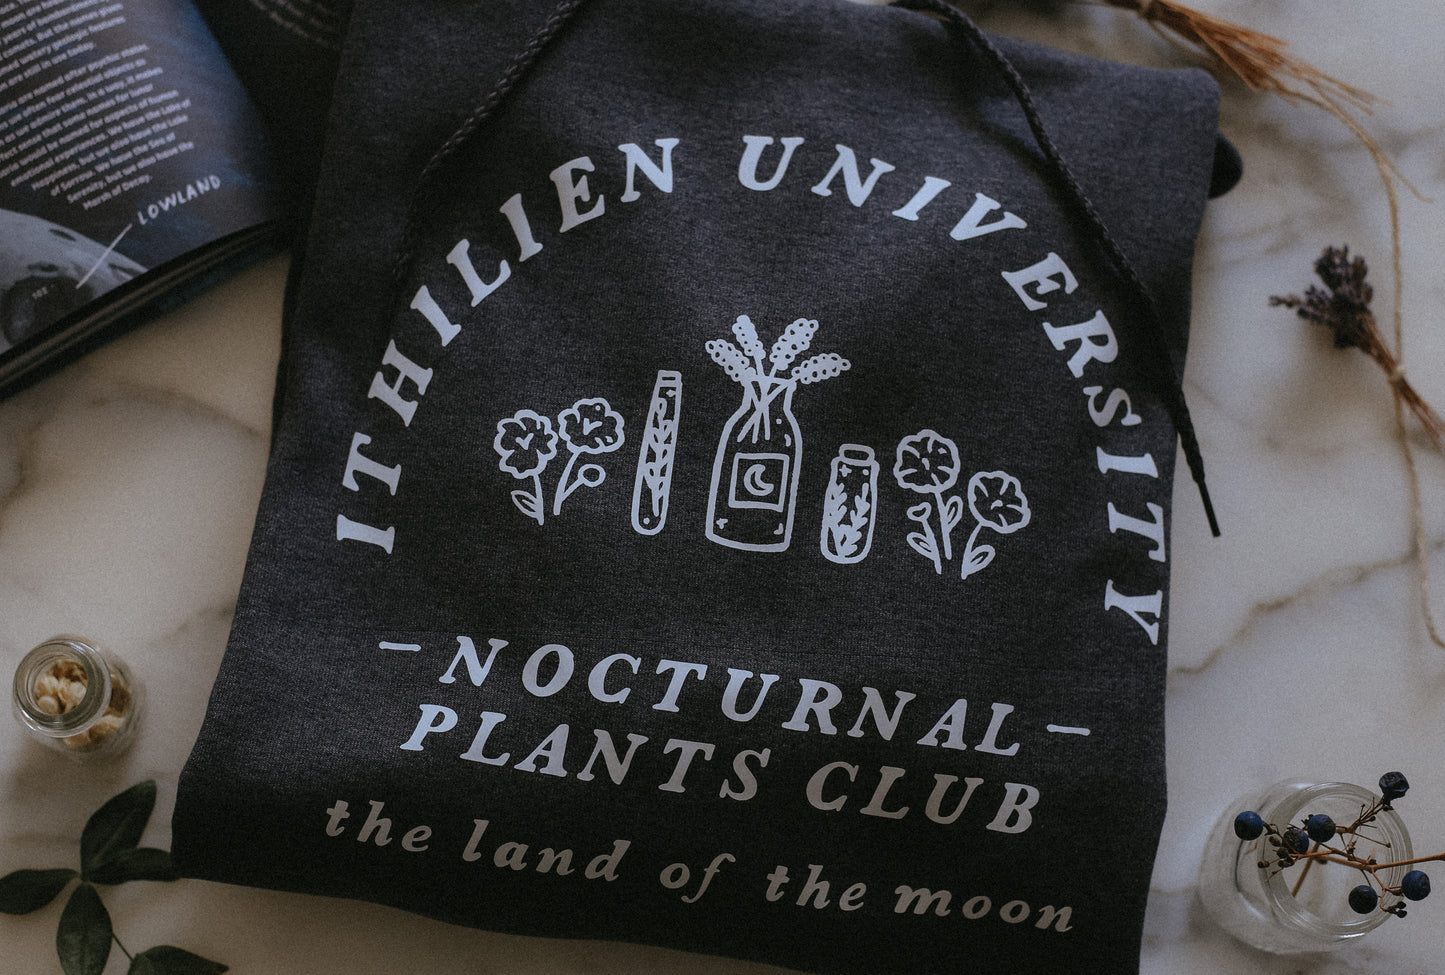 (PRE-ORDER) ithilien university nocturnal plants club sweatshirt/hoodie